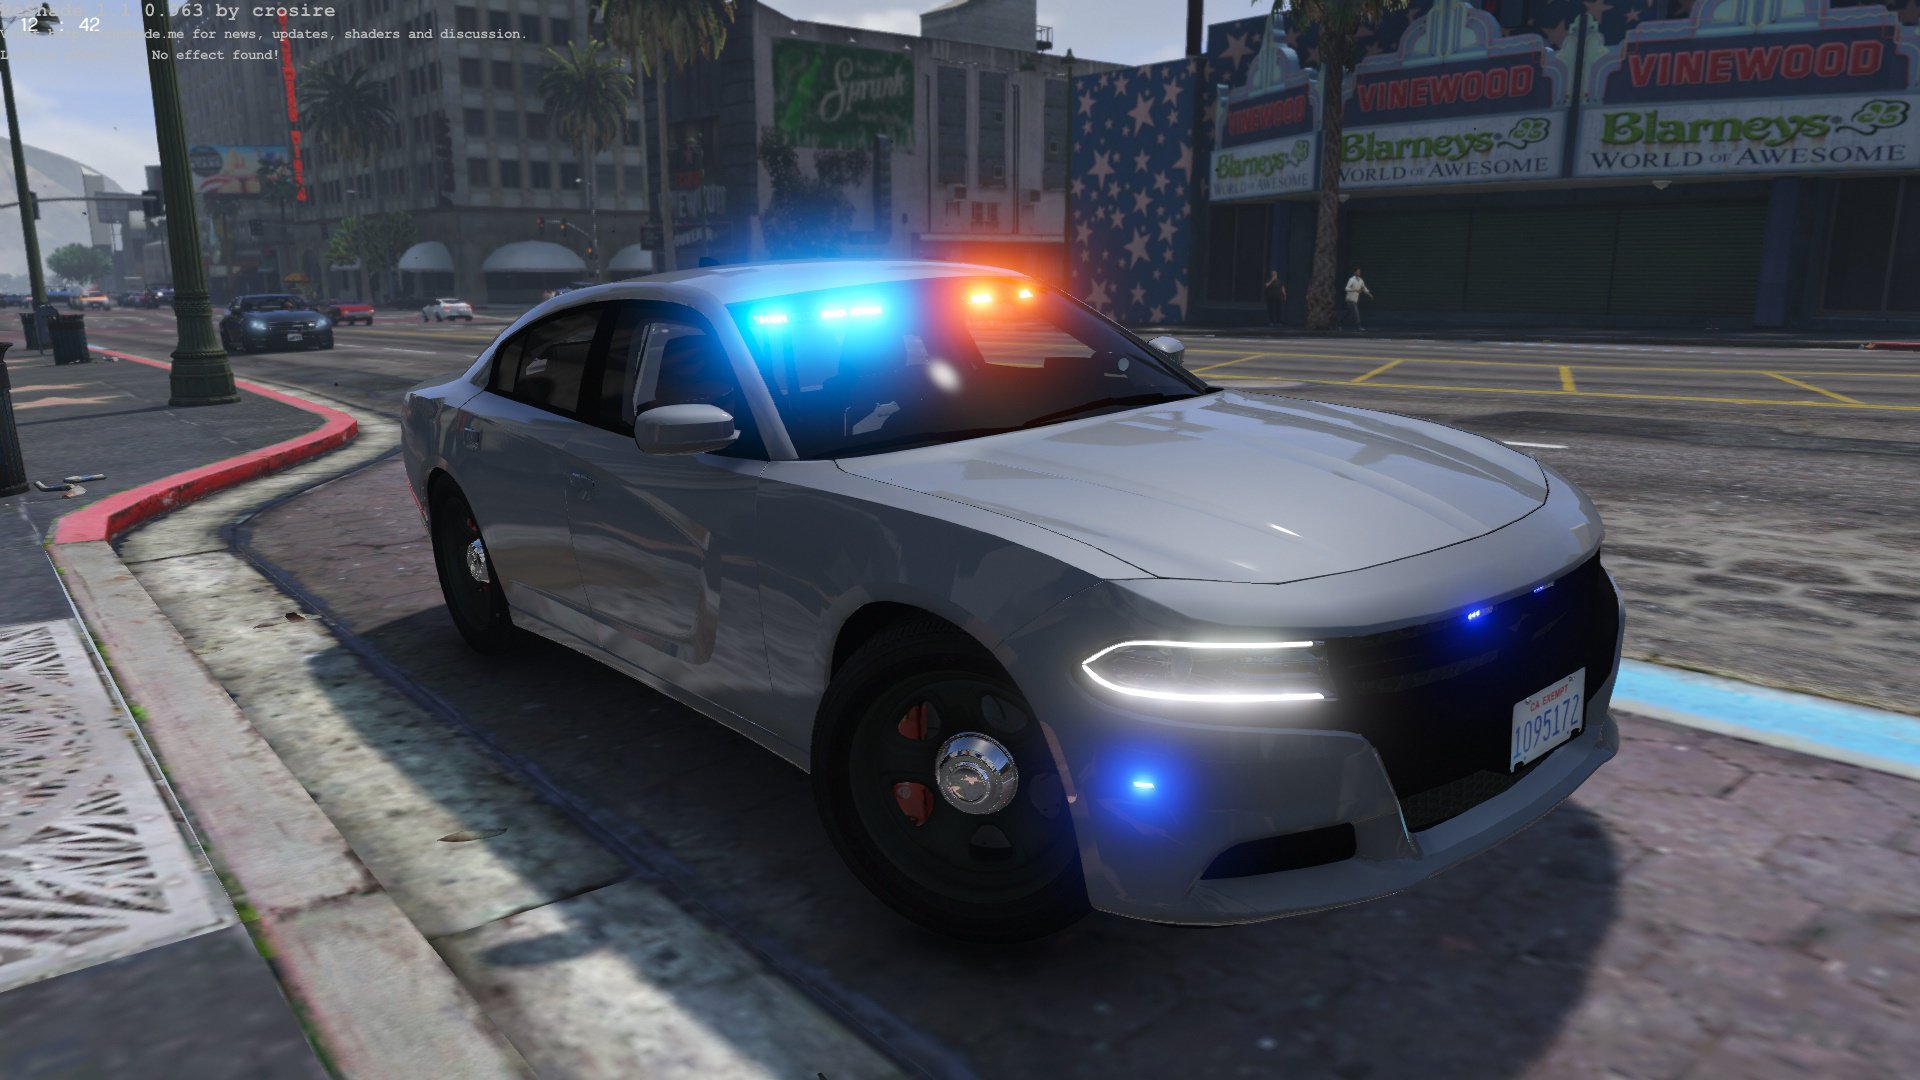 Dodge Charger Pursuit 2016 LAPD Unmarked - Vehicules pour GTA V sur GTA